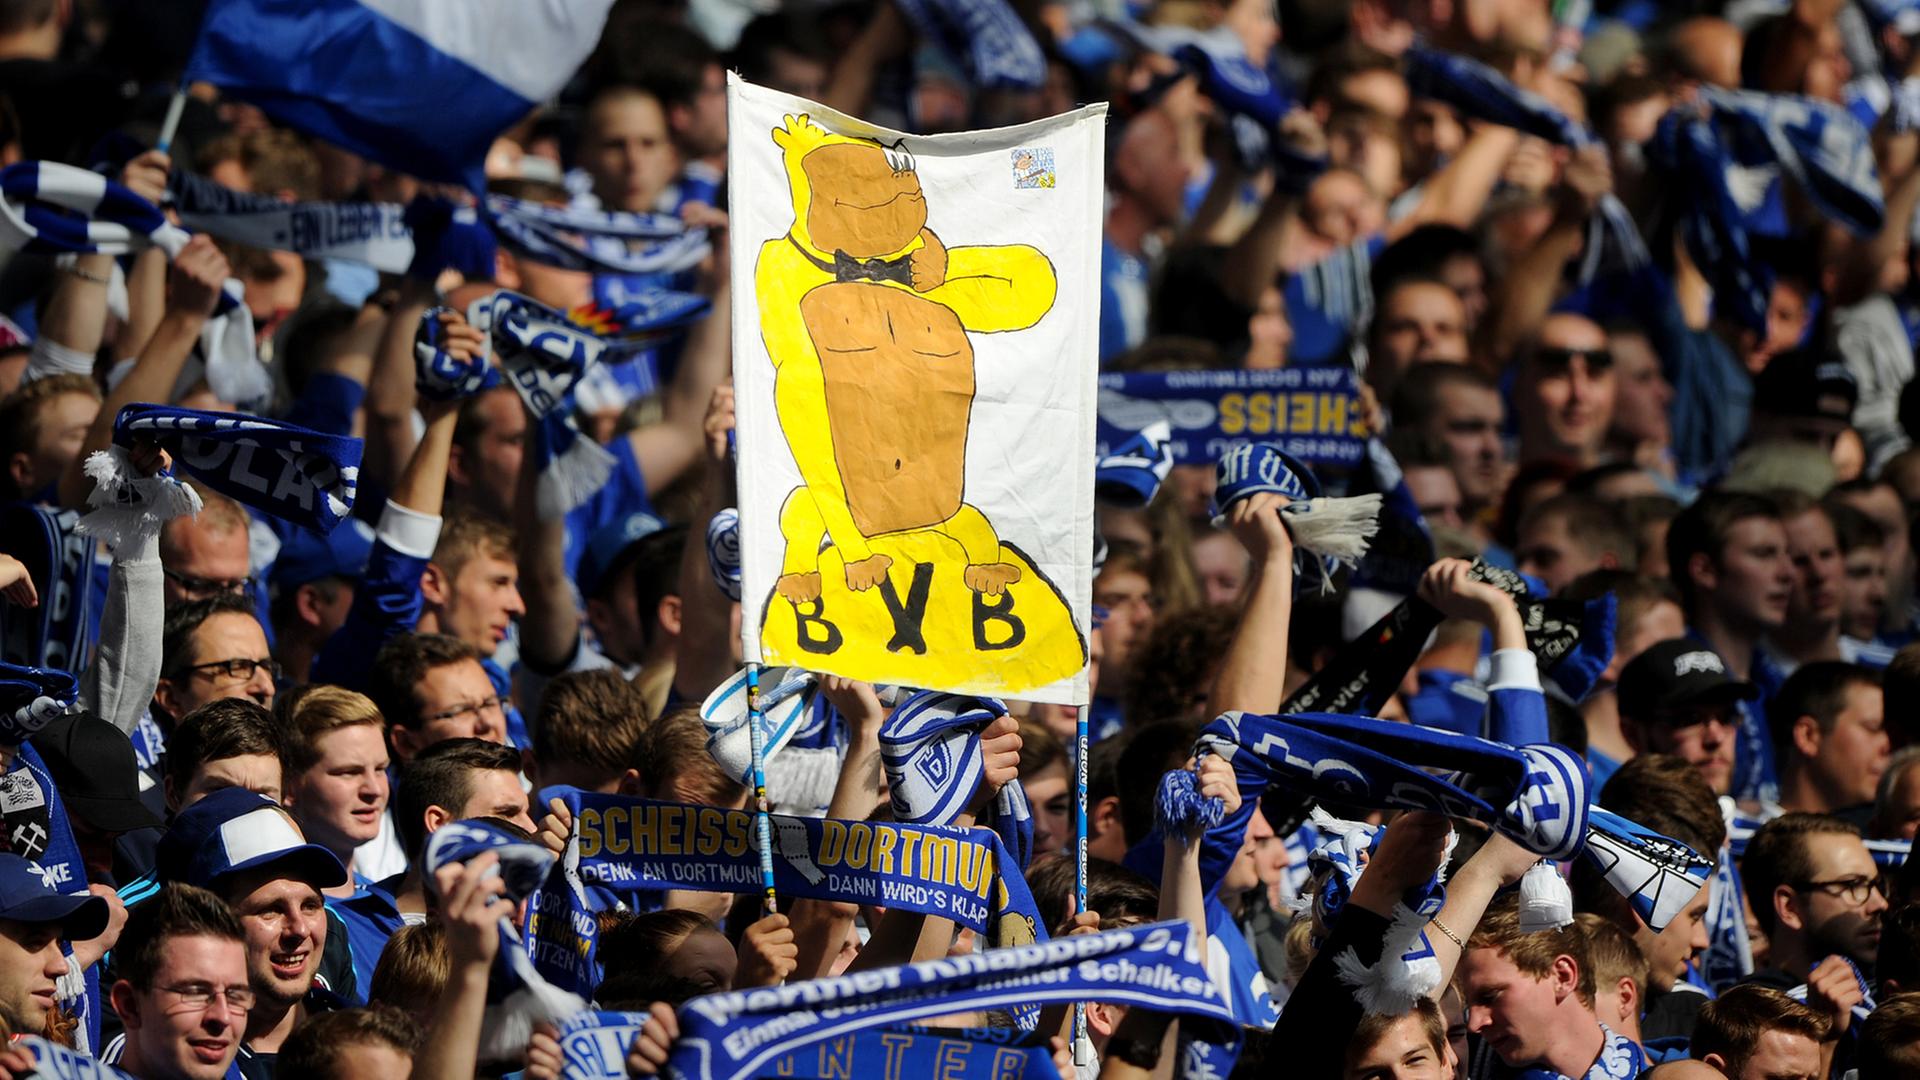 Fußball Bundesliga 6. Spieltag: FC Schalke 04 - Borussia Dortmund am 27.09.2014 in der Veltins-Arena in Gelsenkirchen (Nordrhein-Westfalen). Schalke-Fans halten vor Spielbeginn ein Banner hoch, auf dem ein Affe in einem gelben Kostüm auf dem BVB-Vereinswappen sitzt.